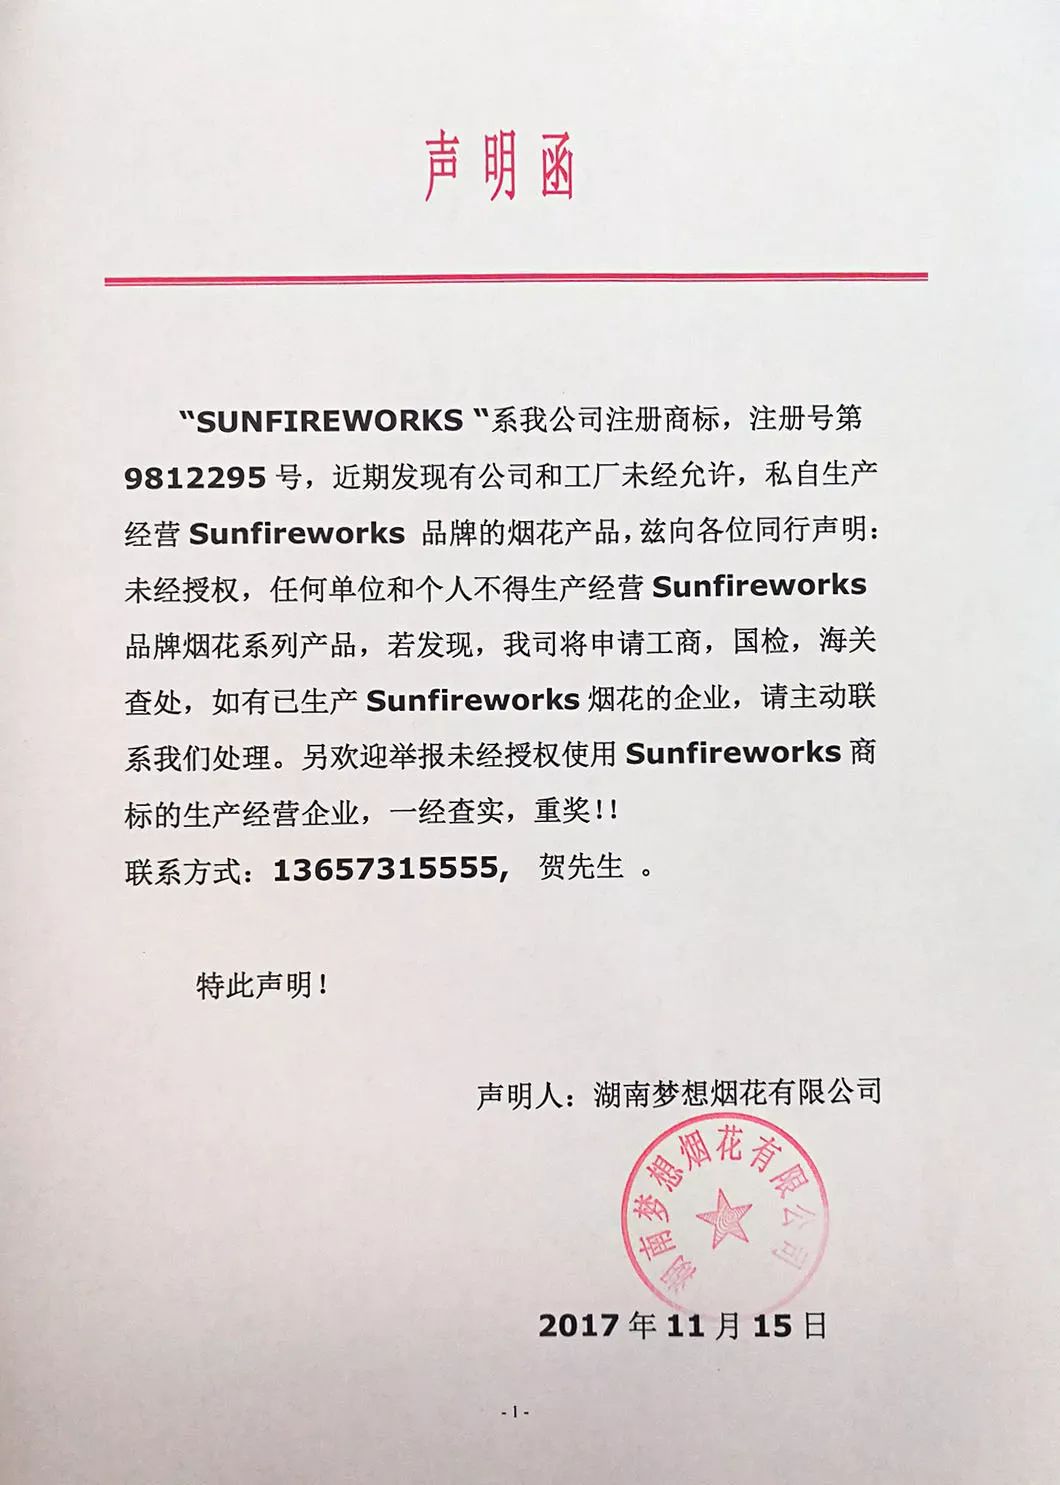 【声明函】梦想烟花关于未经授权不得使用Sunfireworks商标的声明